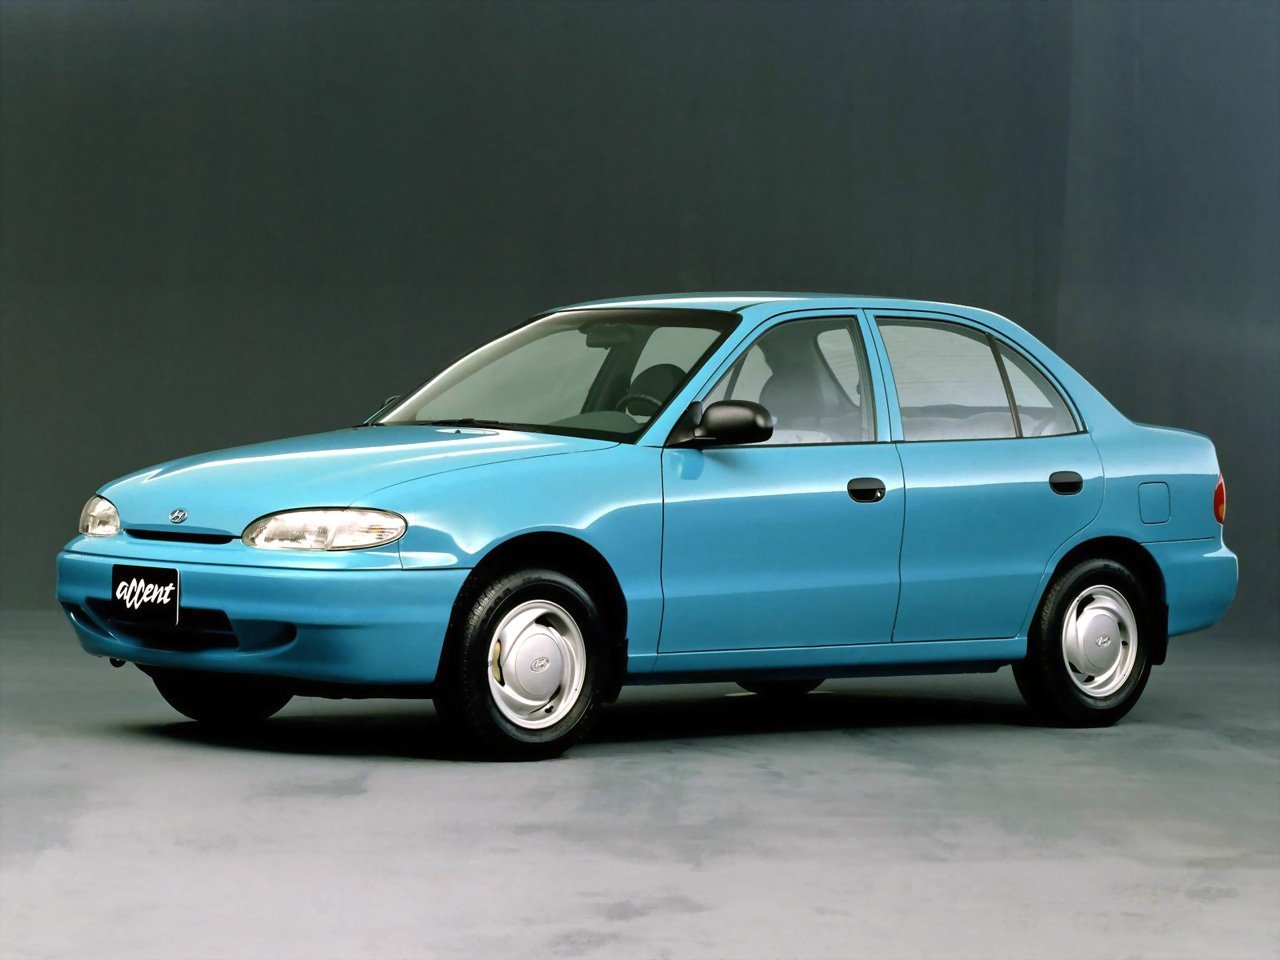 хэтчбек 5 дв. Hyundai Accent 1994 - 2000г выпуска модификация 1.3 AT (60 л.с.)